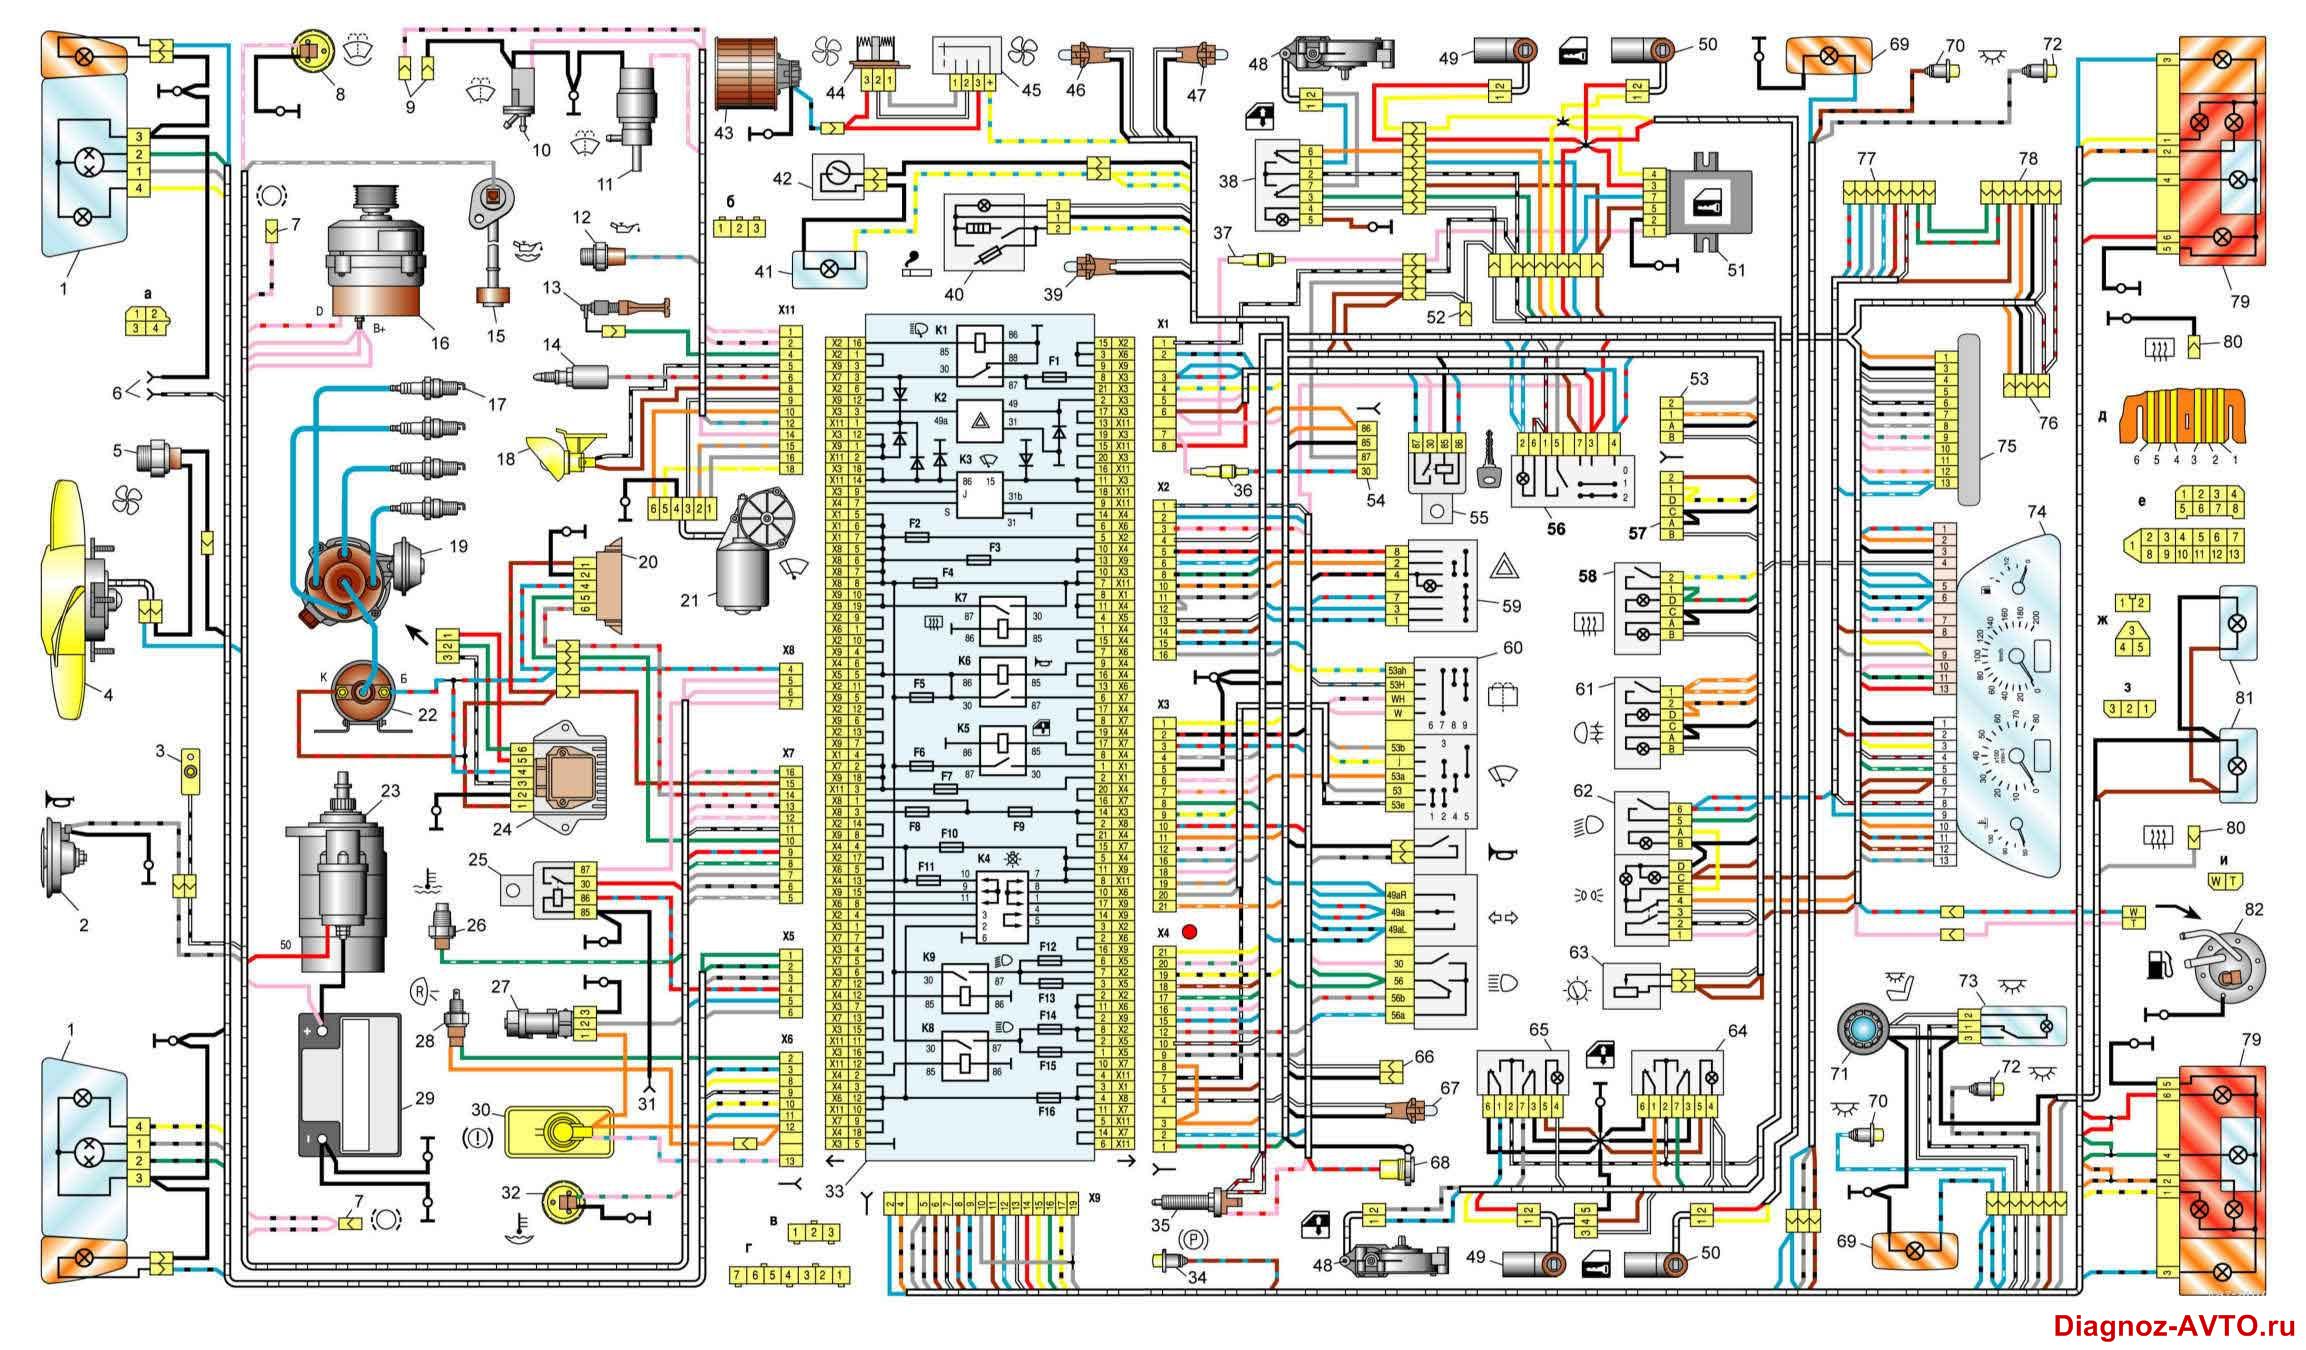 Общая схема электрооборудования ВАЗ-2108, ВАЗ-2109 и ВАЗ-21099 с евро-панелью.